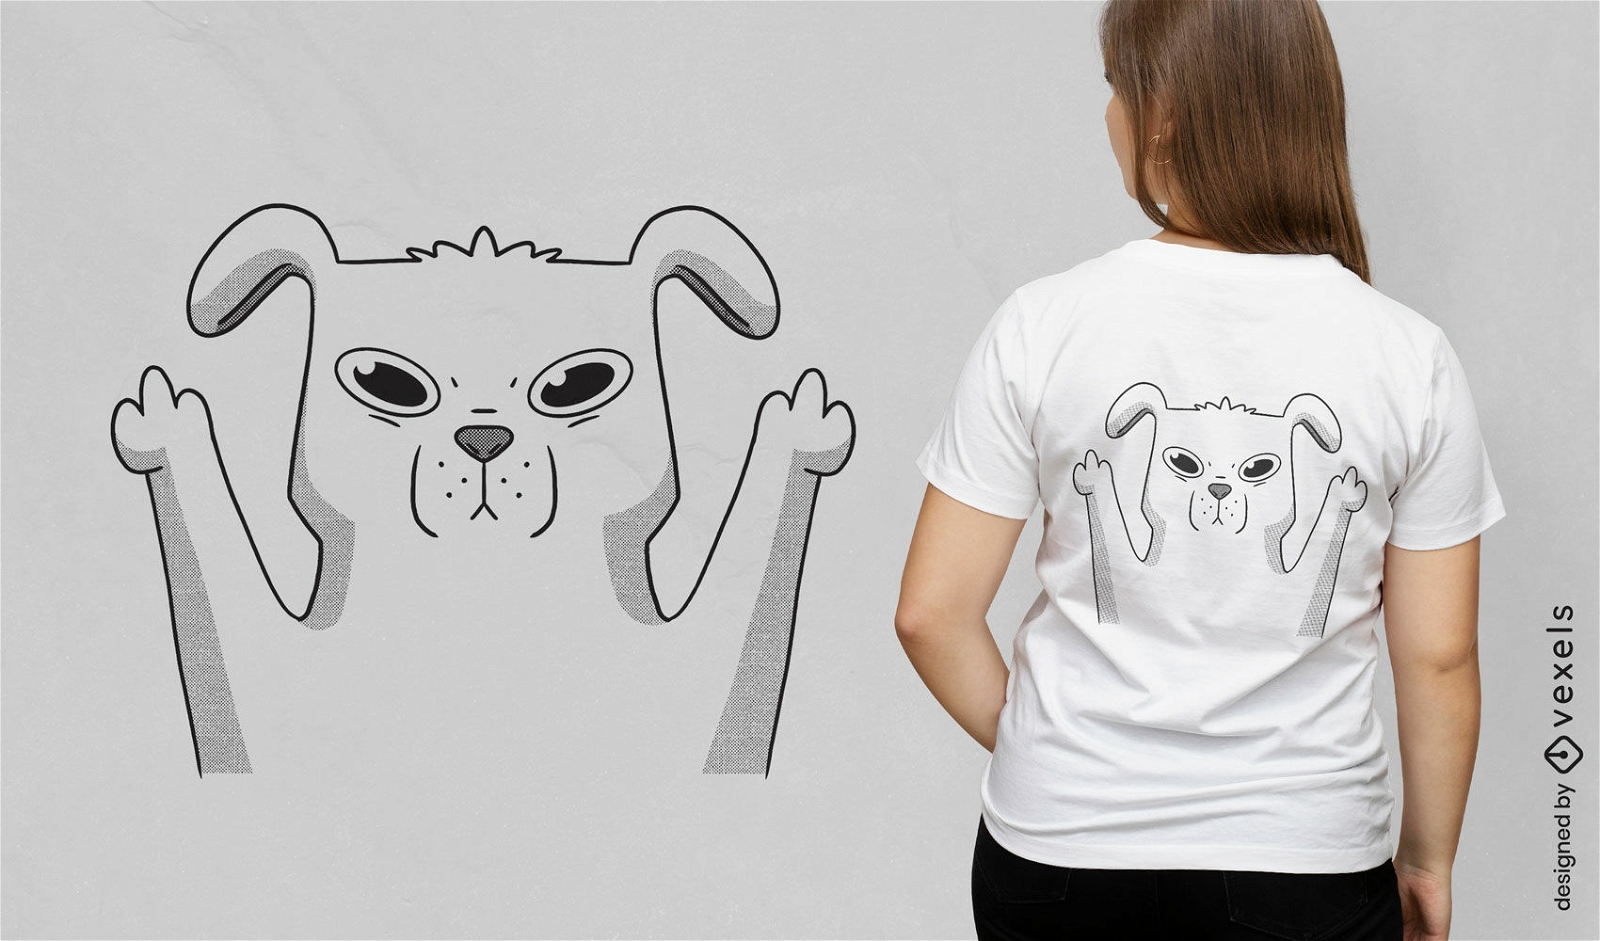 Middle finger cute dog cartoon t-shirt design